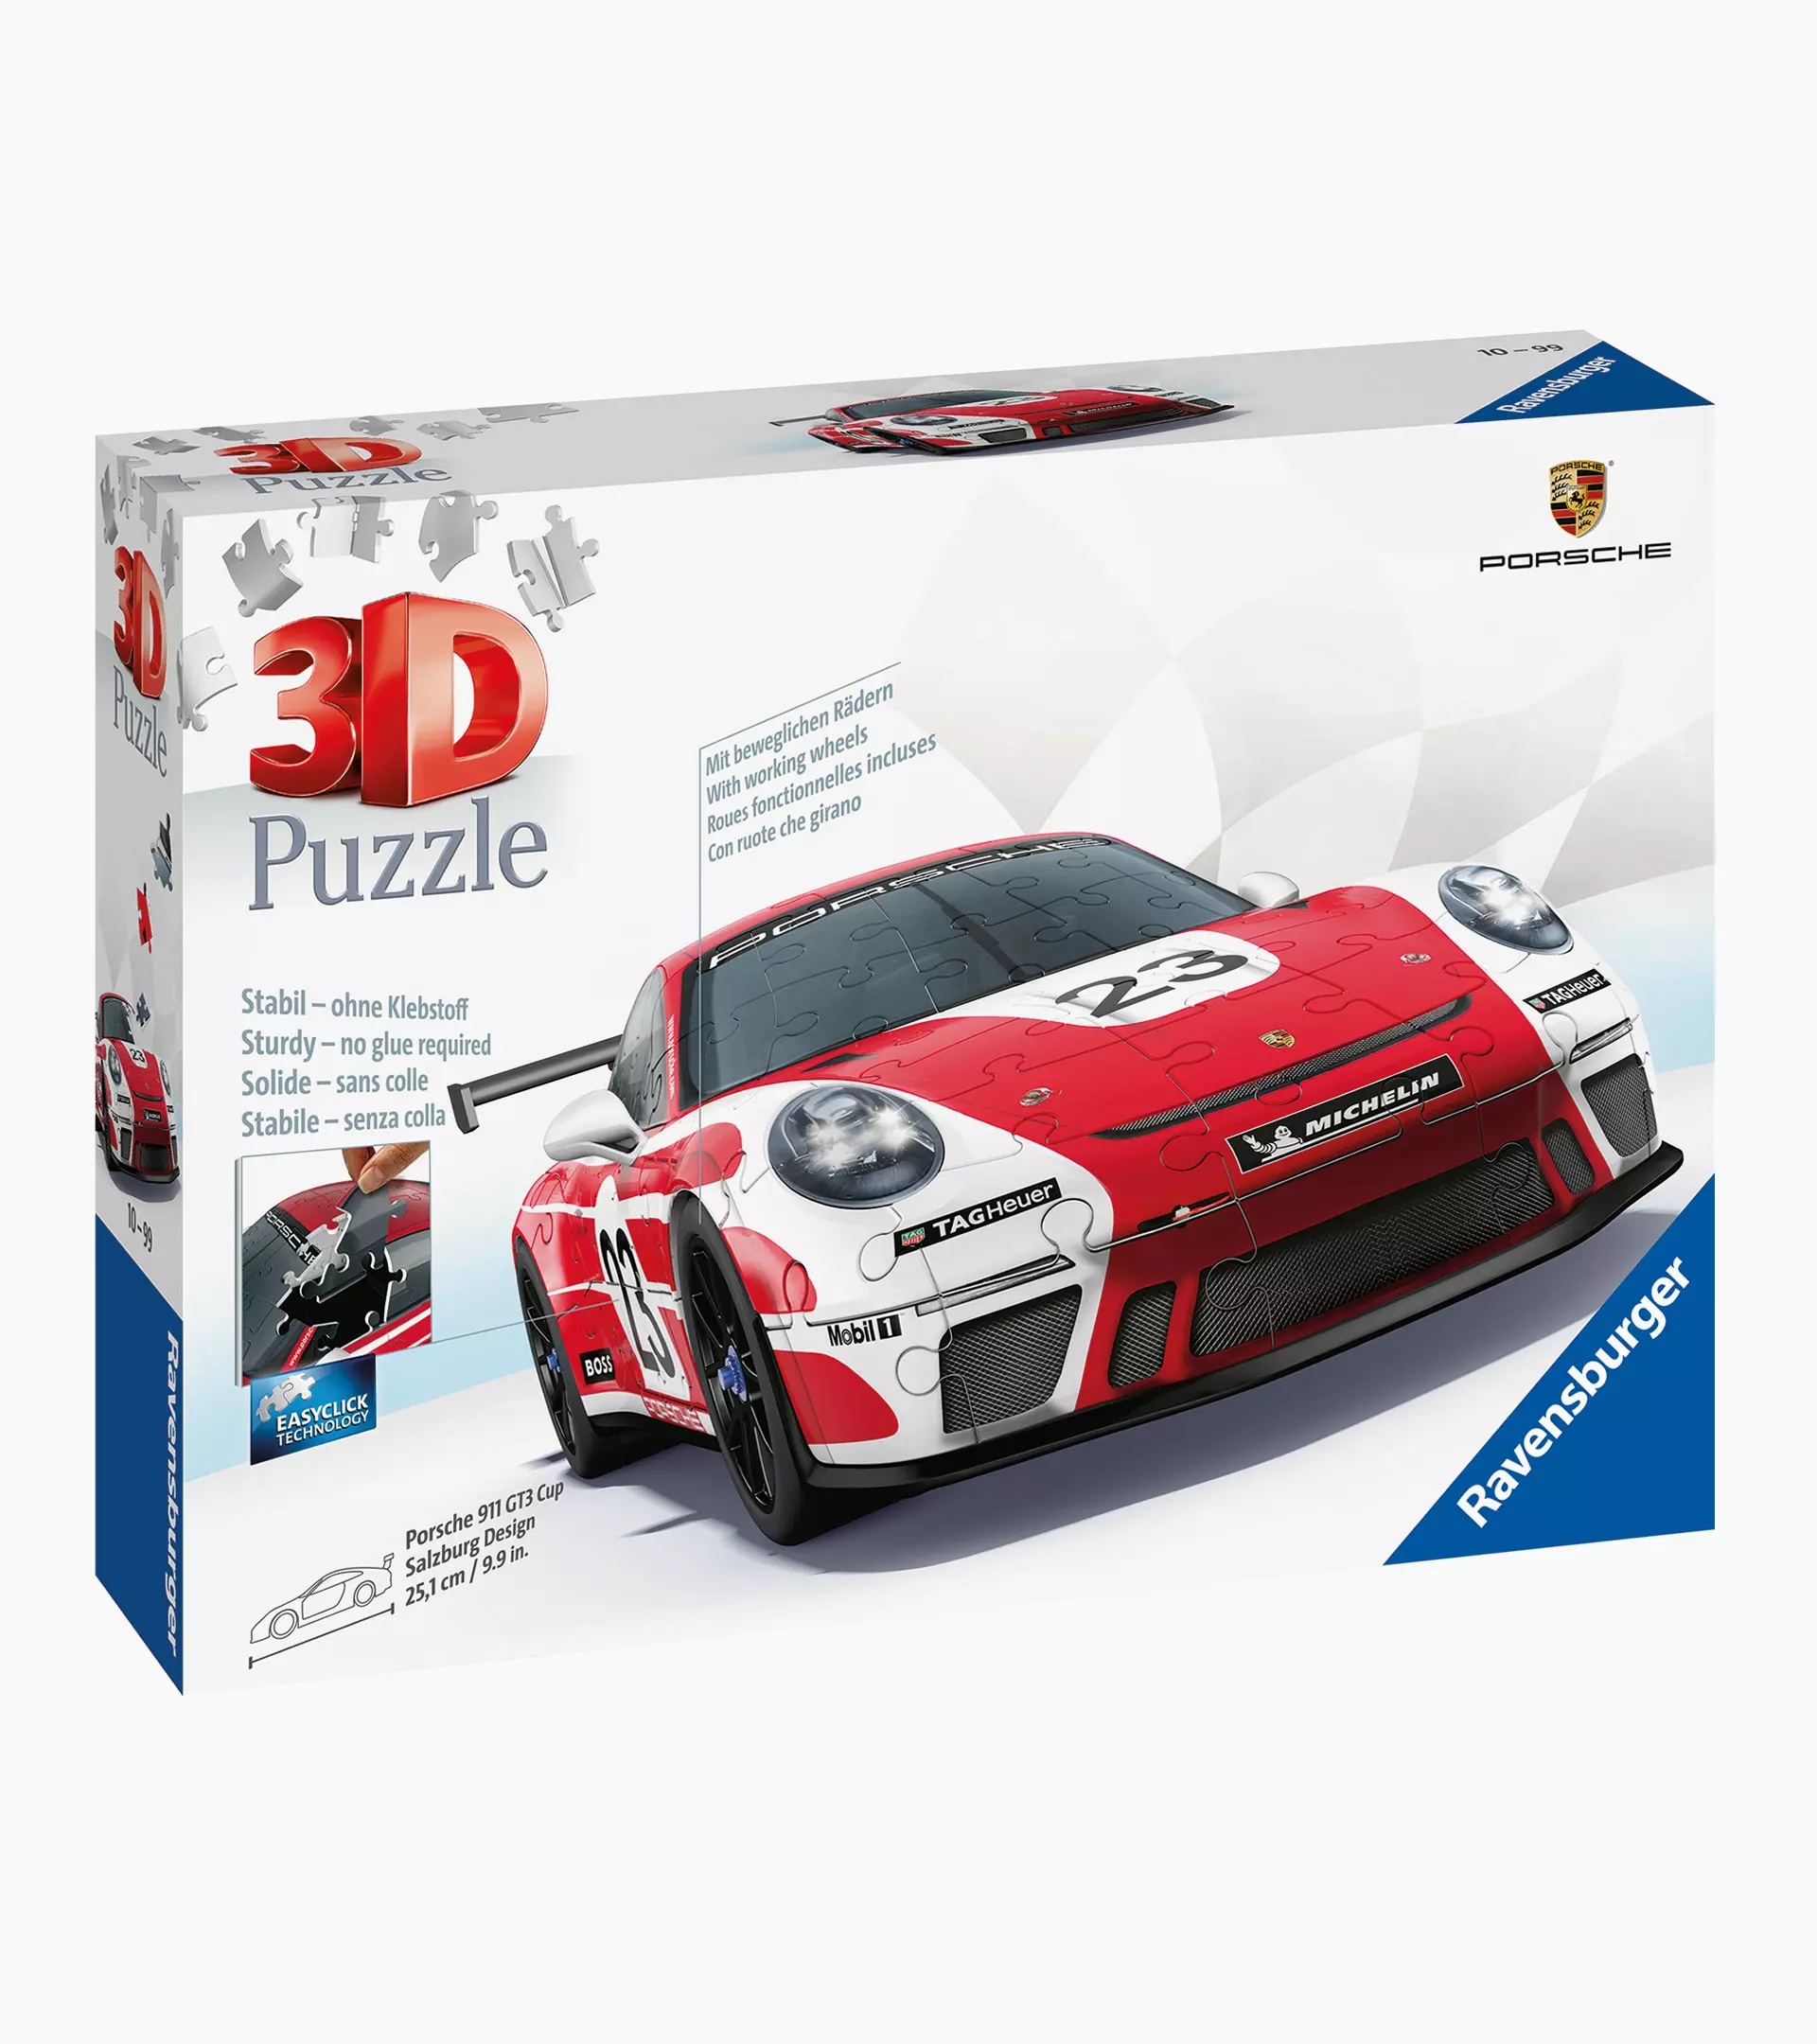 Porsche Puzzle 3D Ravensburger – 911 GT3 Cup